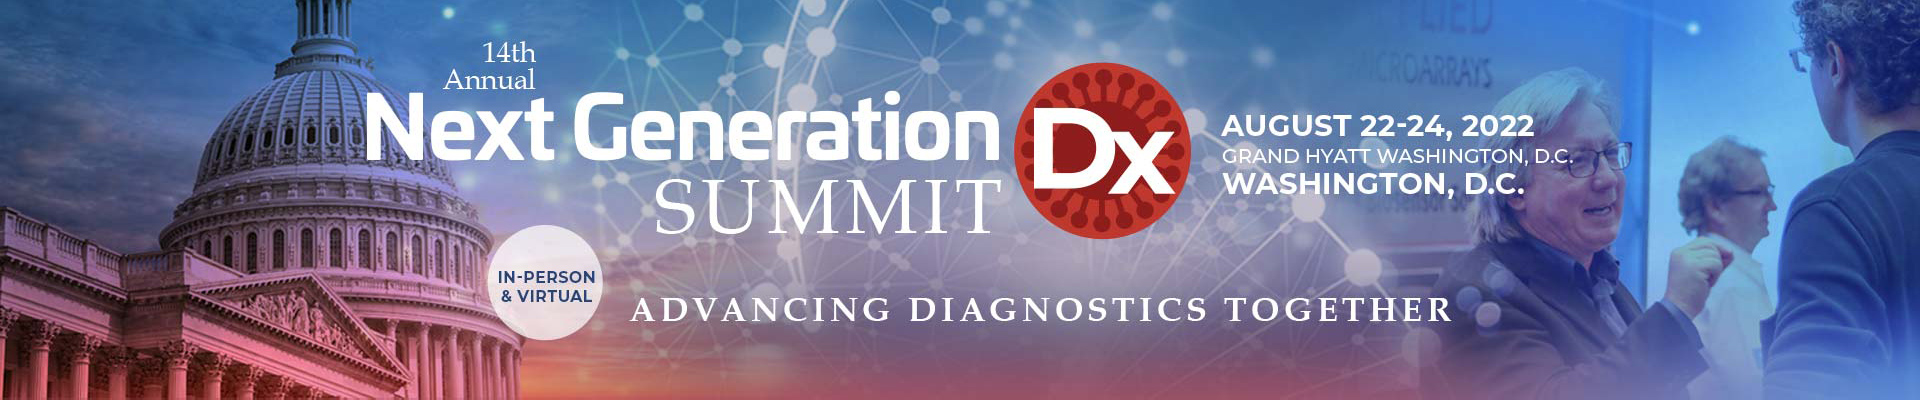 Next Generation Dx Summit Banner